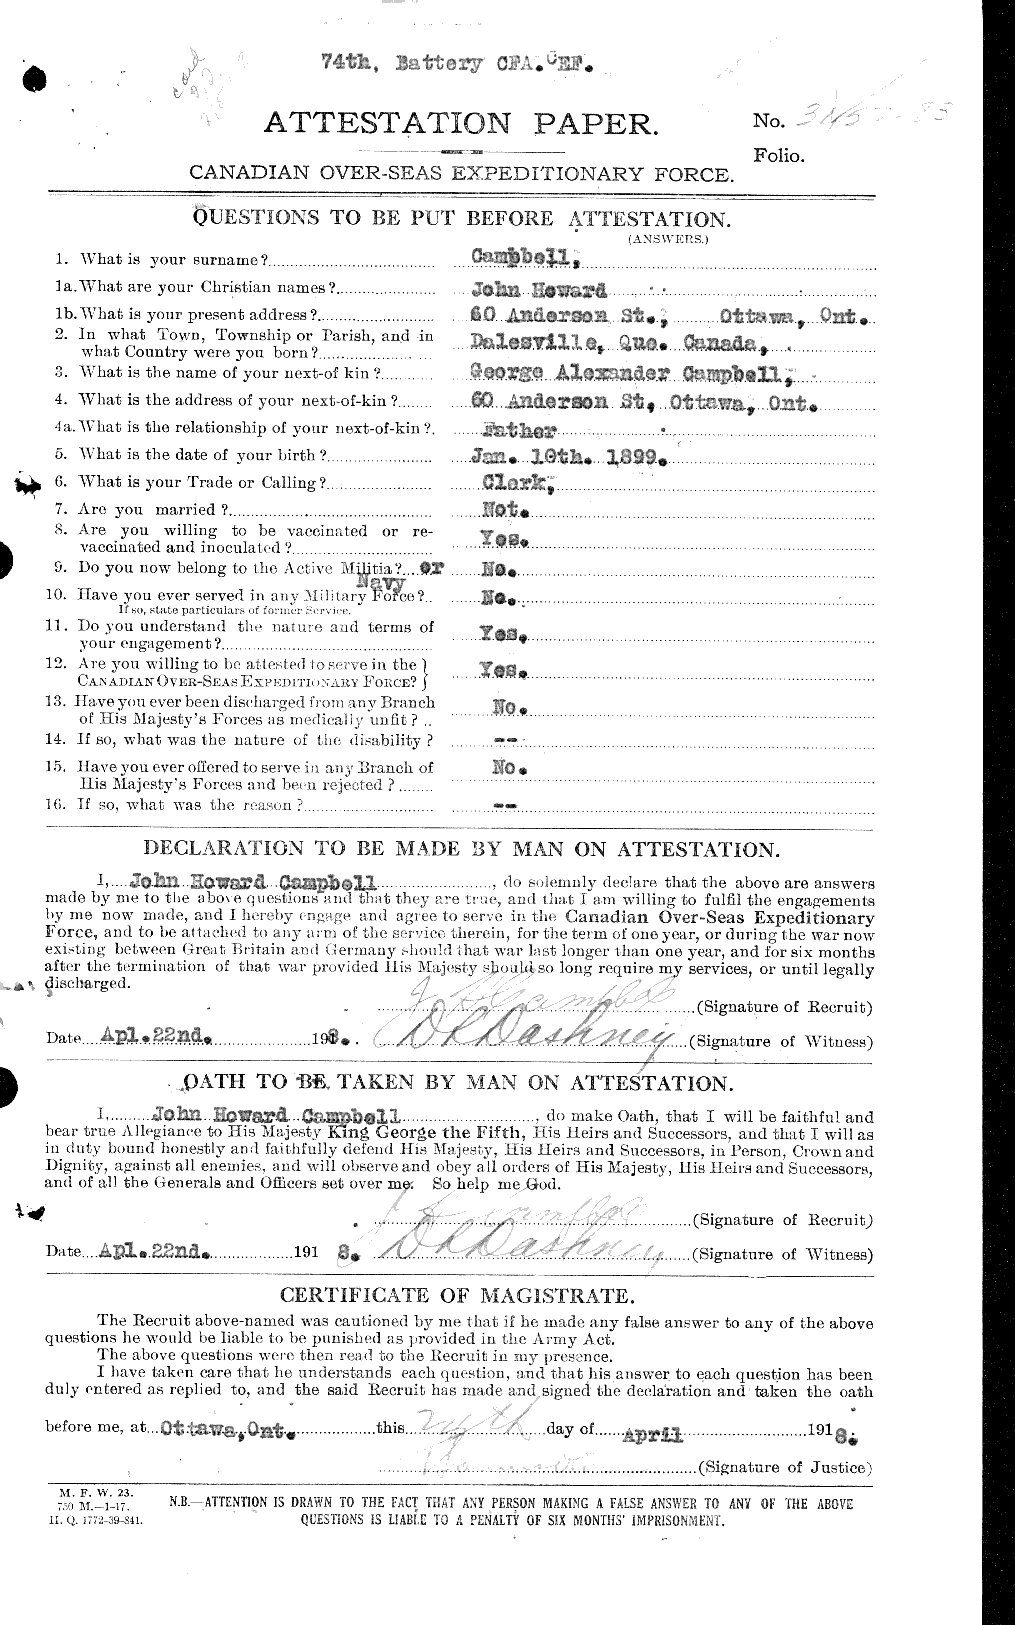 Dossiers du Personnel de la Première Guerre mondiale - CEC 008536a